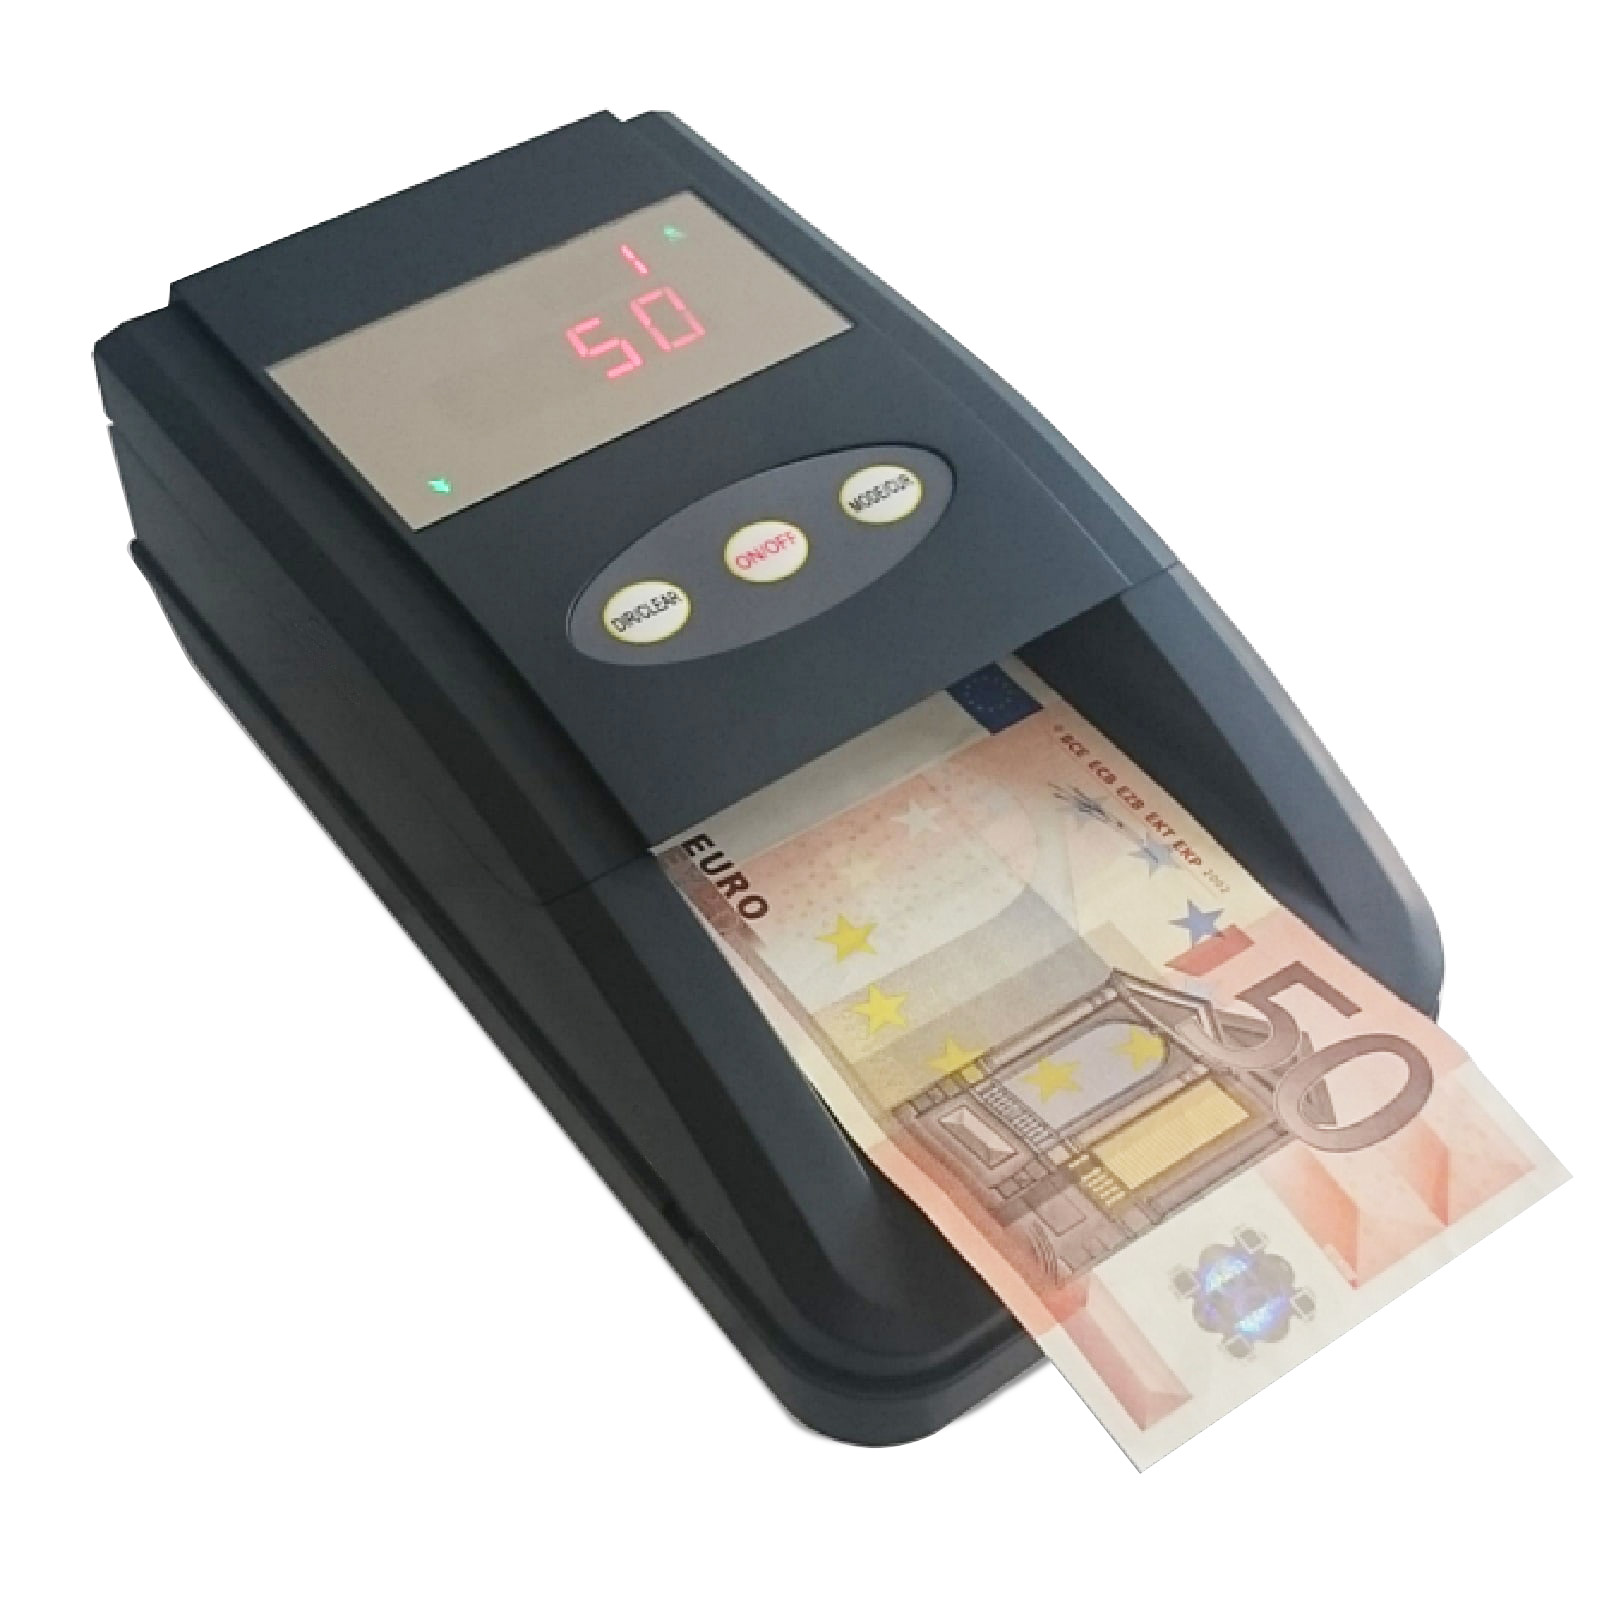 Raccoglitore monete M8-BO - Detectalia Italia  Rilevatori banconote false,  contabanconote, contamonete